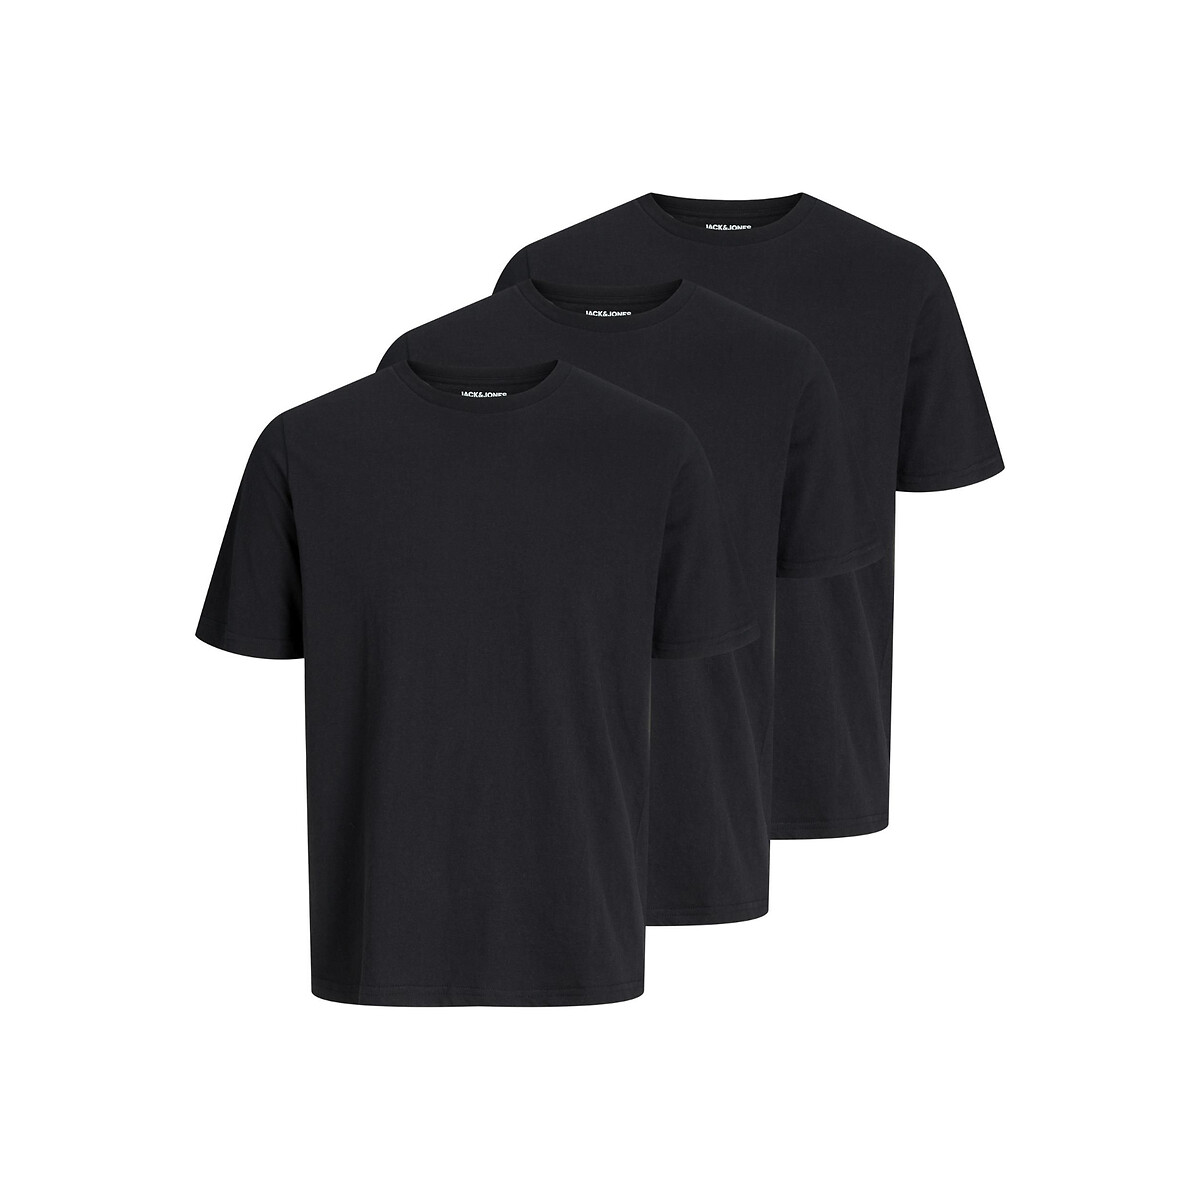 Комплект из трех футболок с круглым вырезом XL черный комплект из трех футболок с круглым вырезом 3 года 94 см синий